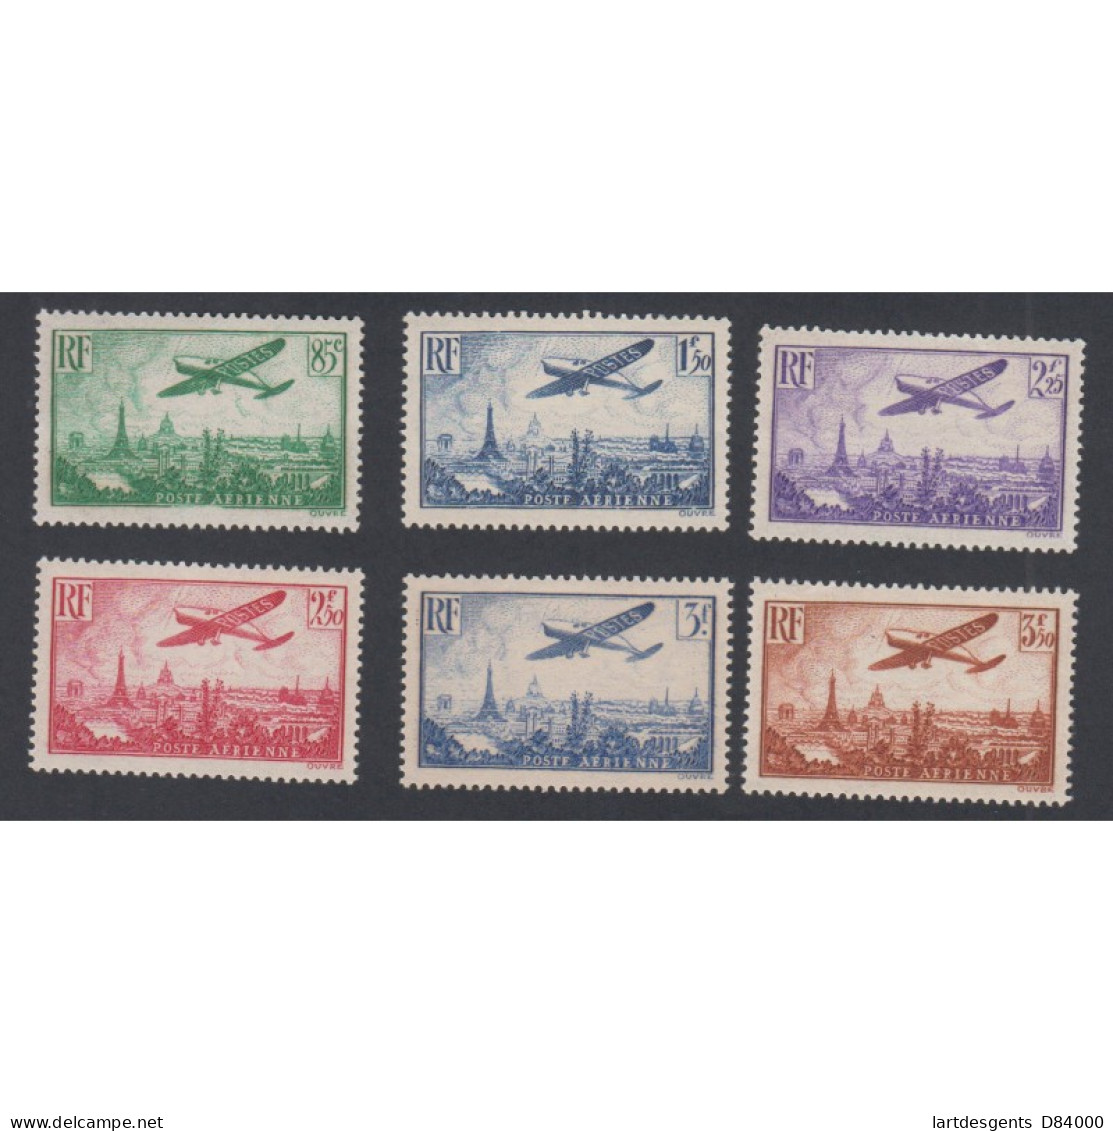 Timbres Poste Aérienne -  N°8 à N°13 - 1936 - Neufs** - Cote 300 Euros- Lartdesgents - 1927-1959 Neufs